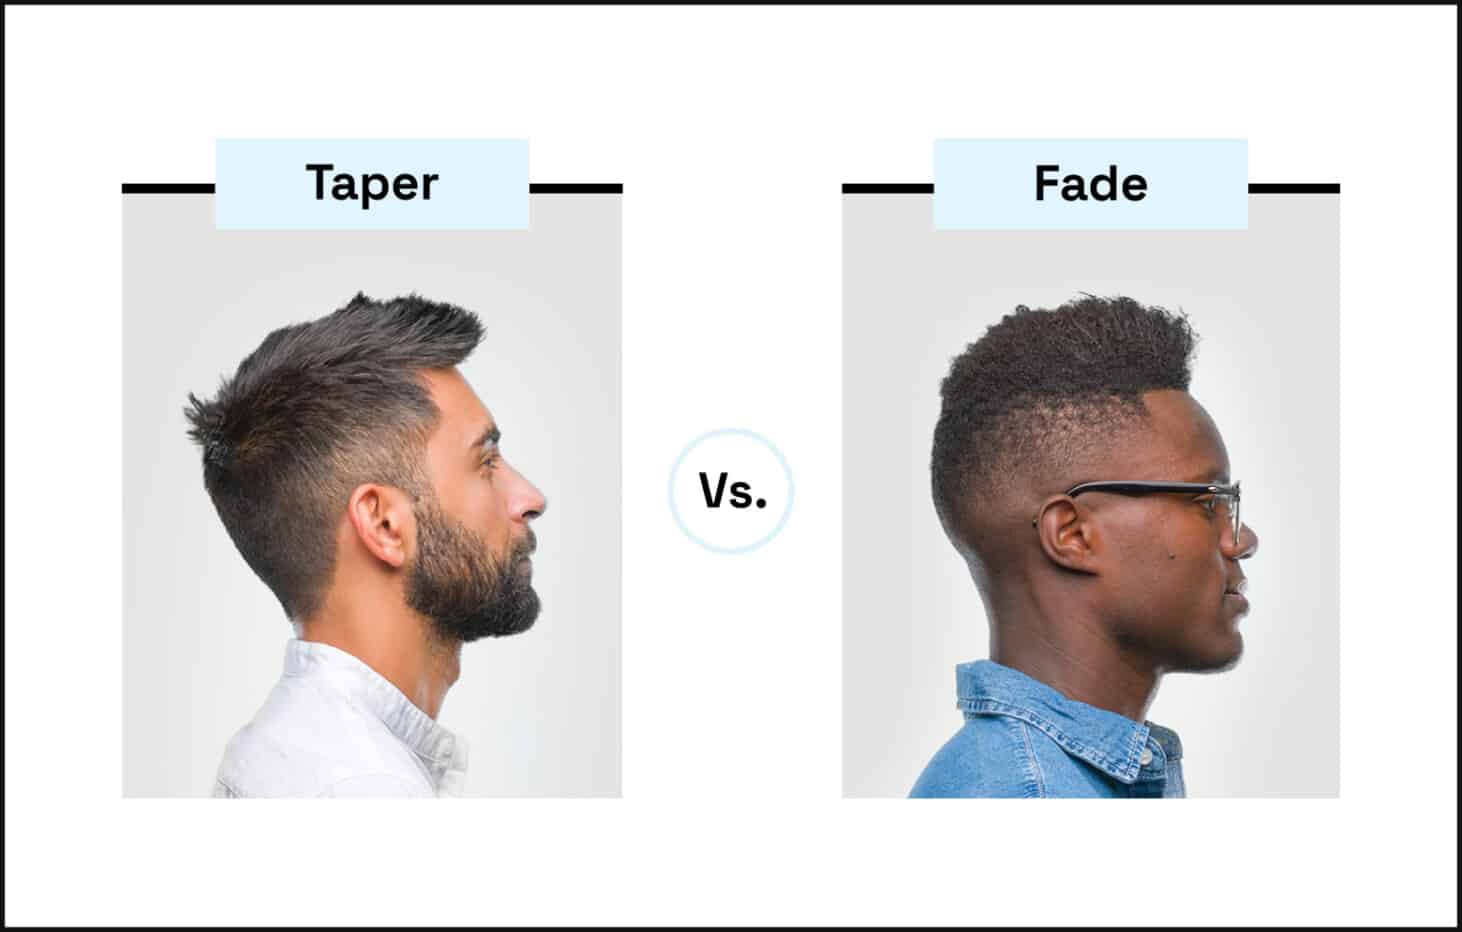 taper-vs-fade-1-731x466 @ 2x